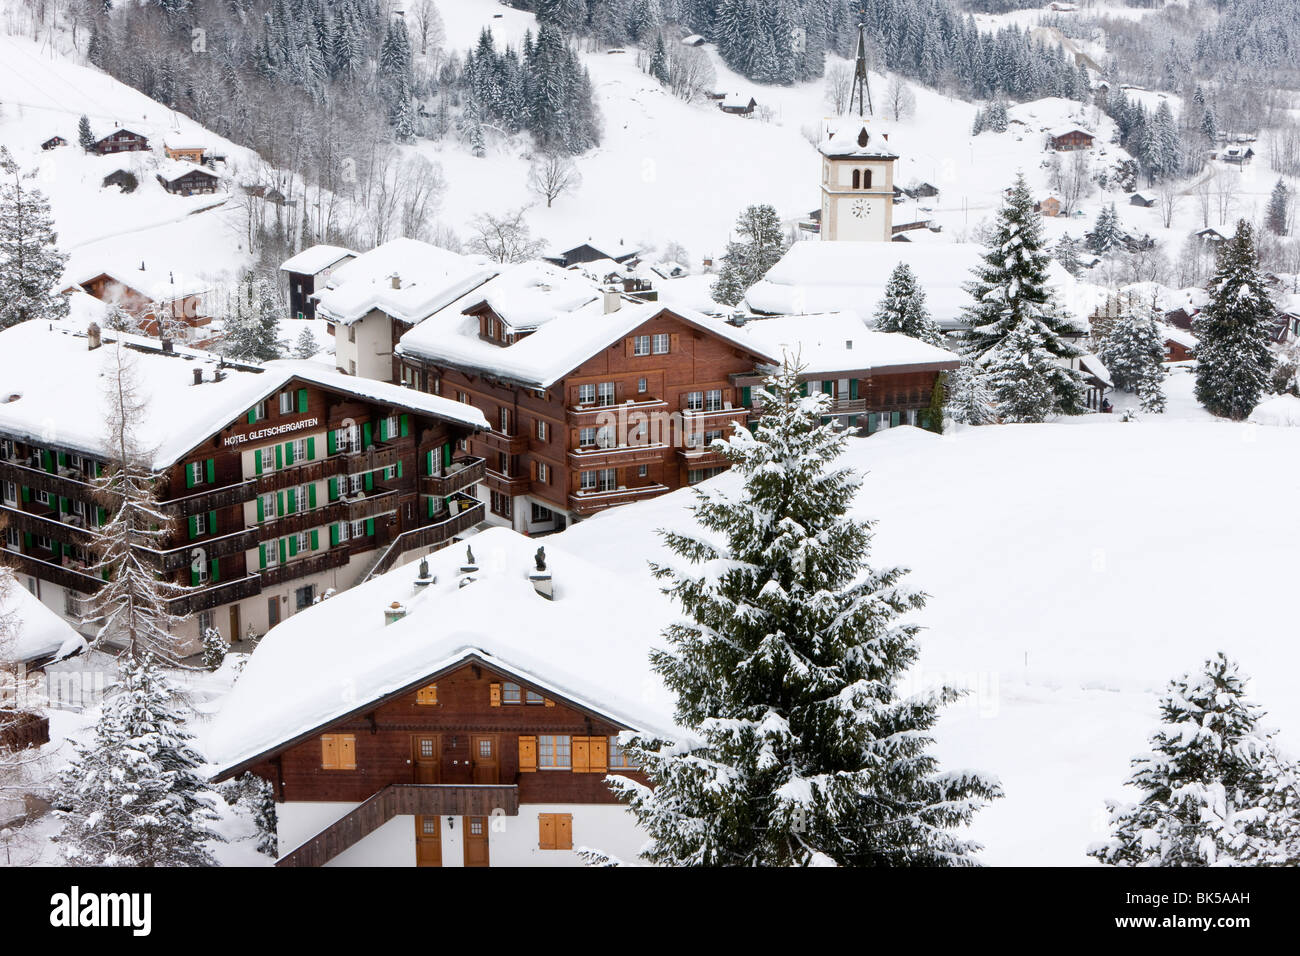 Villaggio e chiesa dopo una pesante caduta di neve, Grindelwald, regione di Jungfrau, Oberland bernese, alpi svizzere, Svizzera, Europa Foto Stock